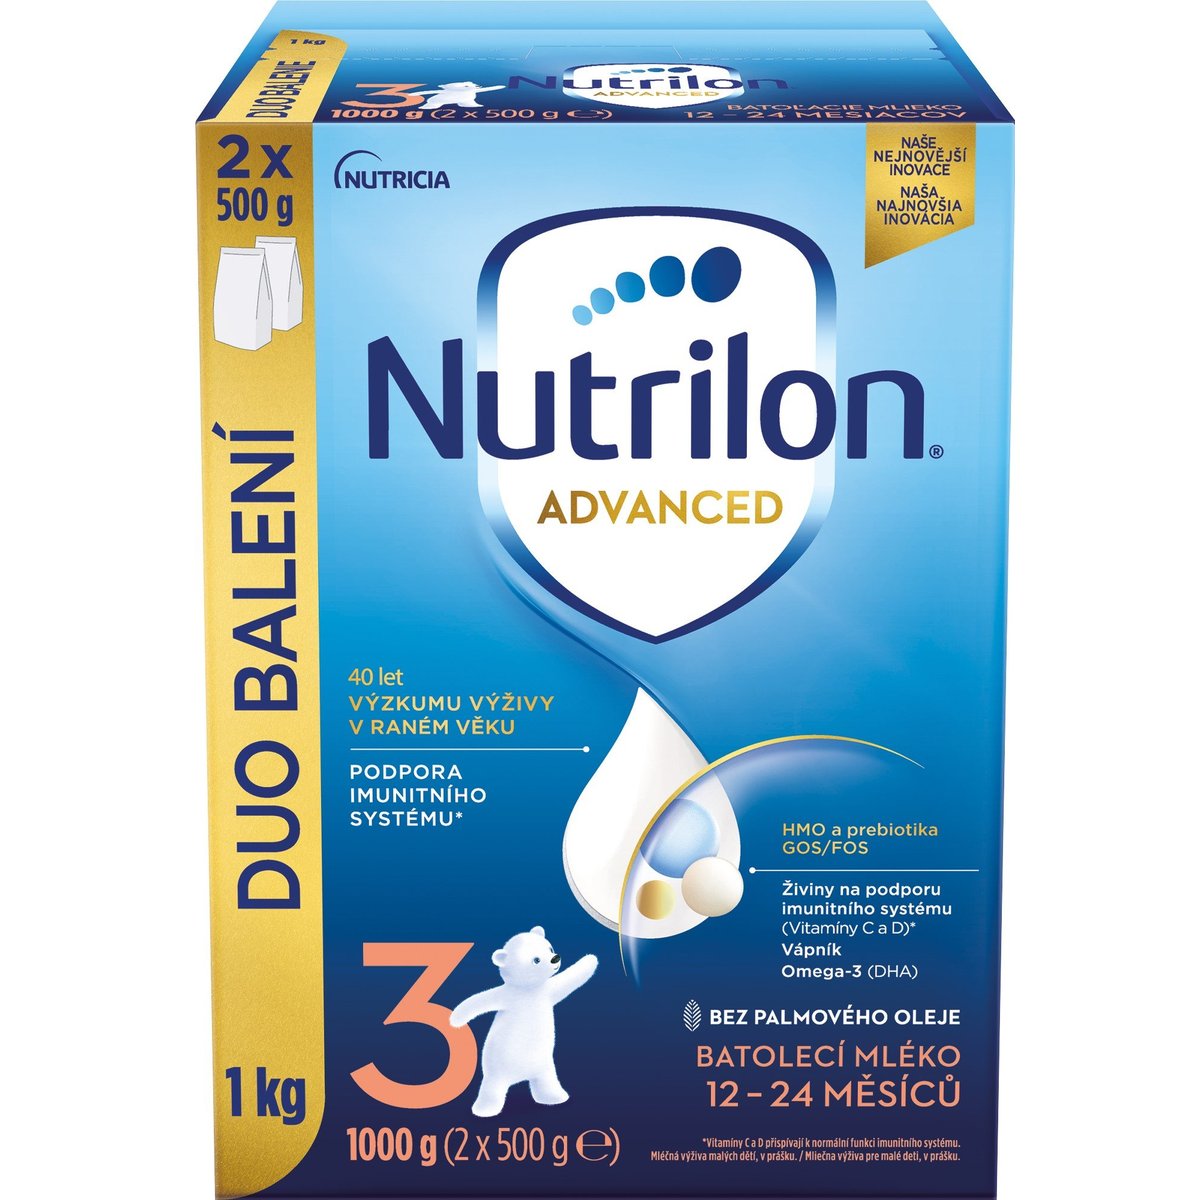 Nutrilon Advanced 3 batolecí mléko – duo balení